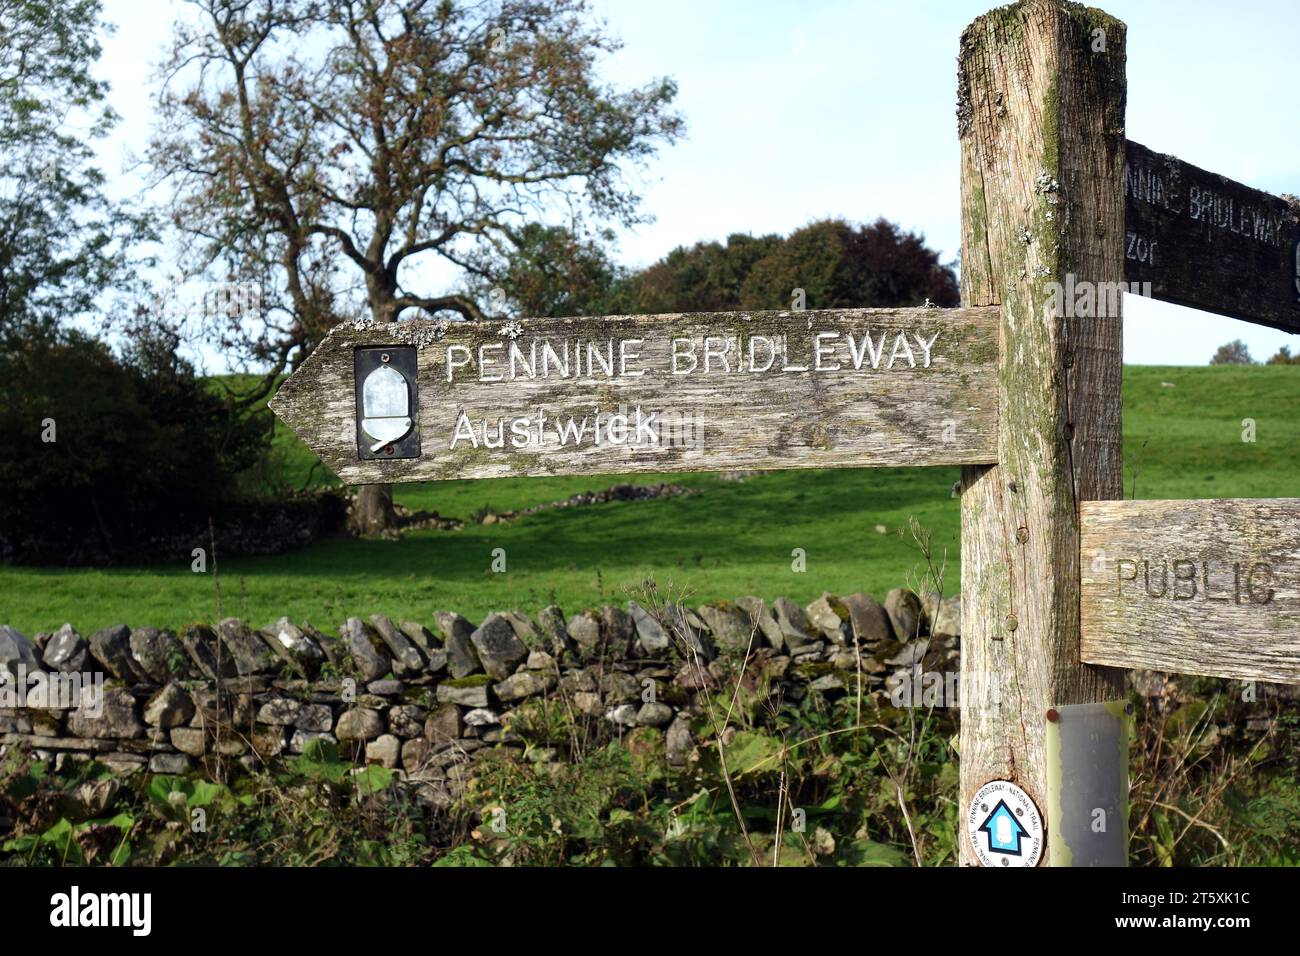 Cartello di legno per Pennine Bridleway ad Auswick da Feizor nel Parco nazionale Yorkshire Dales, Inghilterra, Regno Unito. Foto Stock